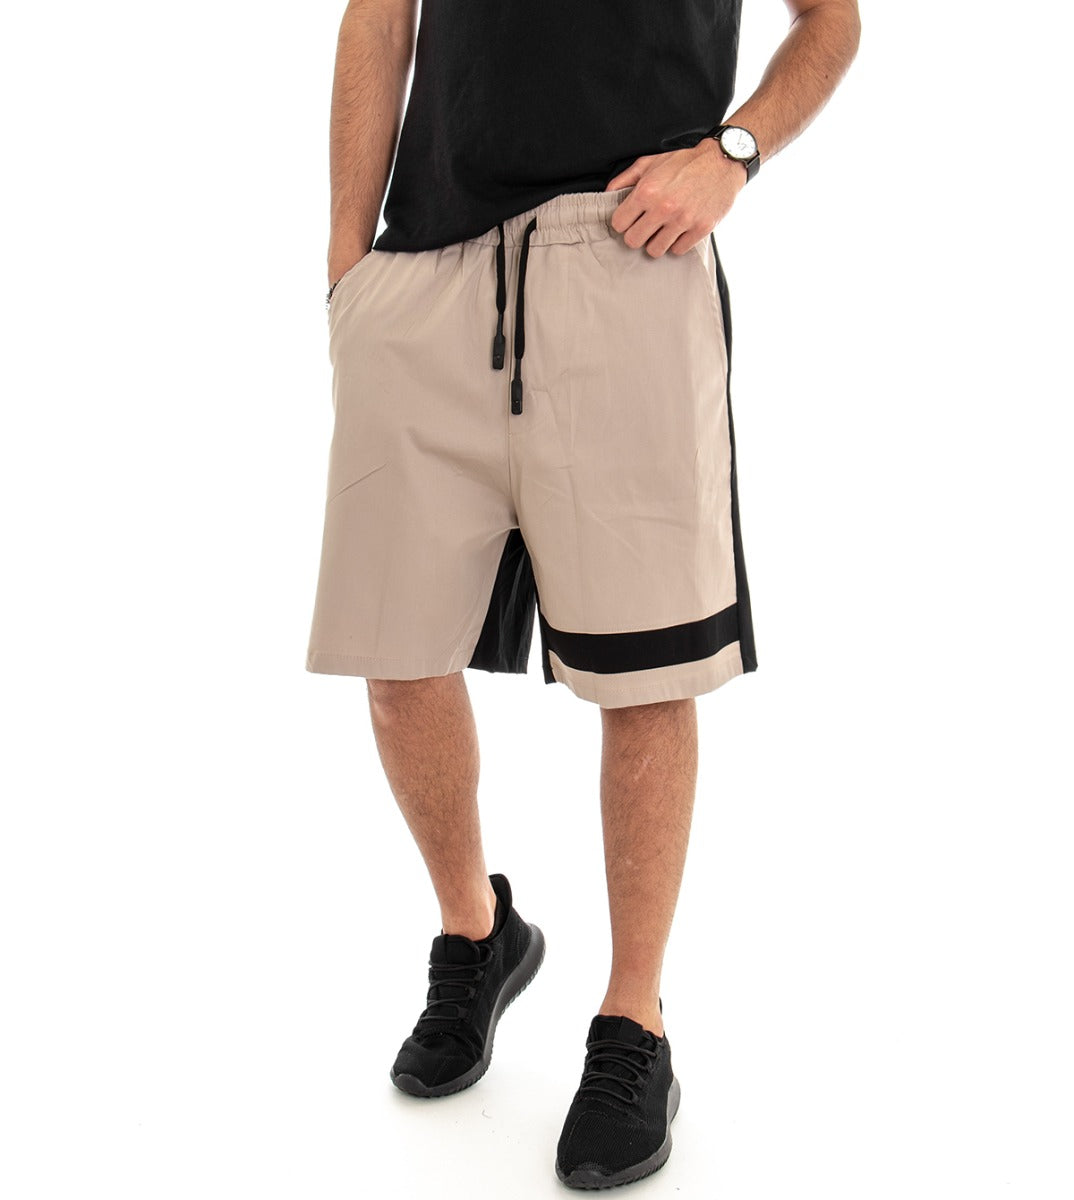 Bermuda Pantaloncino Corto Uomo Tuta Bicolore Beige GIOSAL-PC1376A